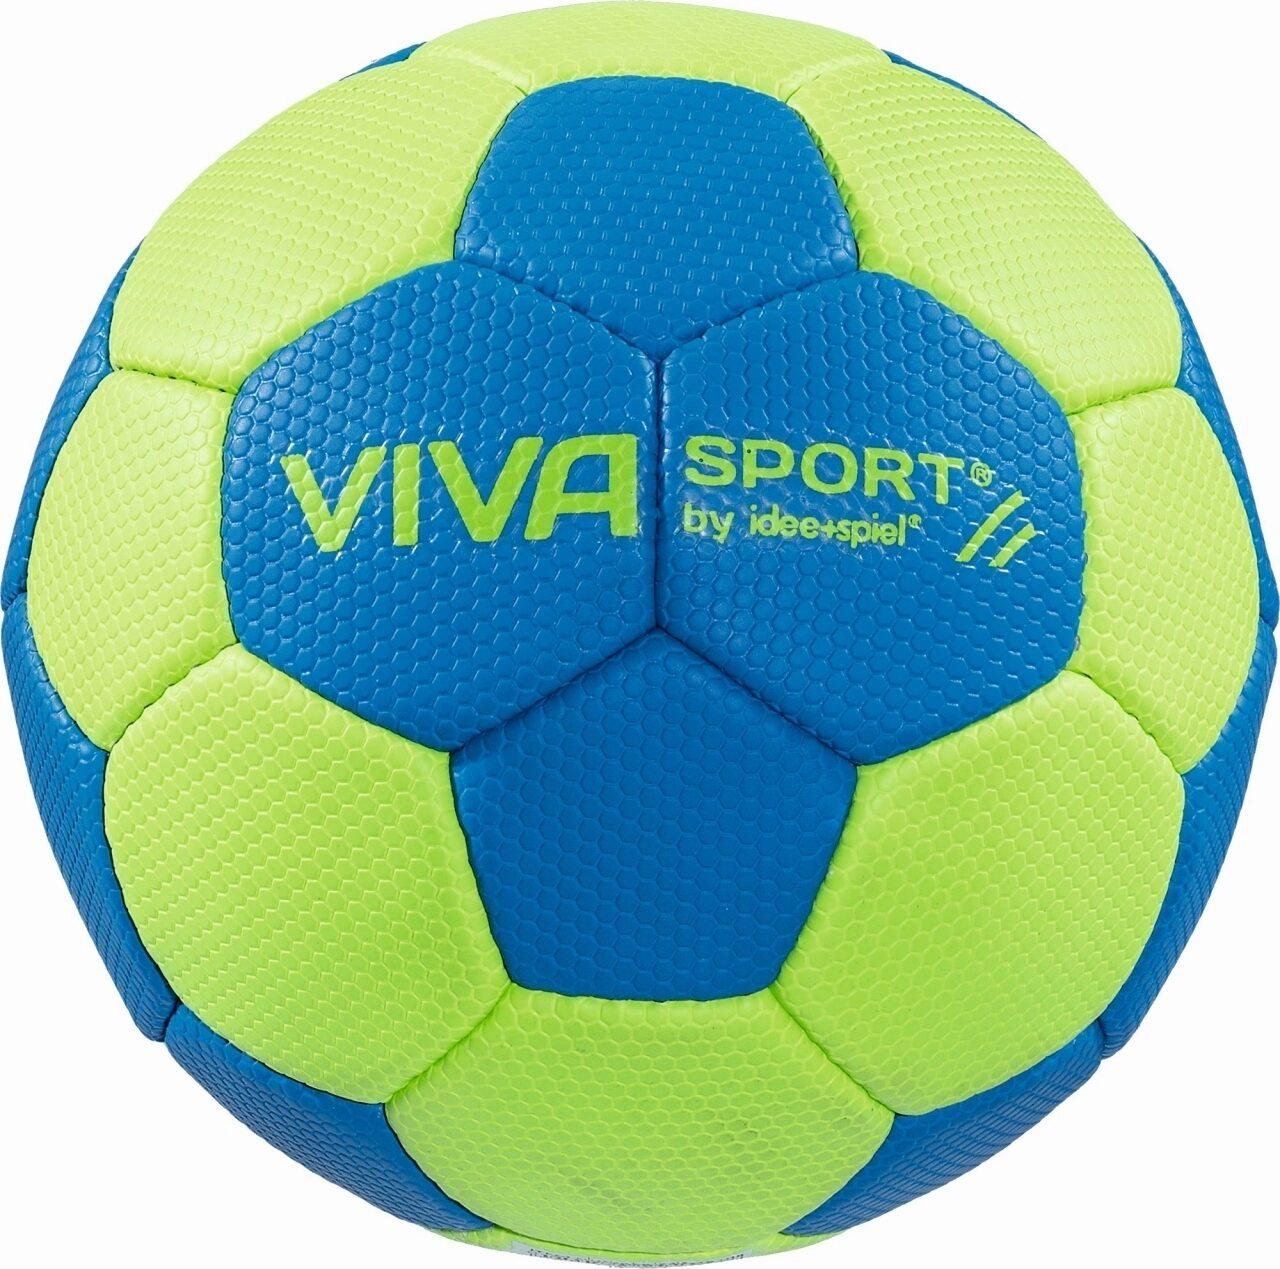 VIVA SPORT - Kinderhandball Gr. 0